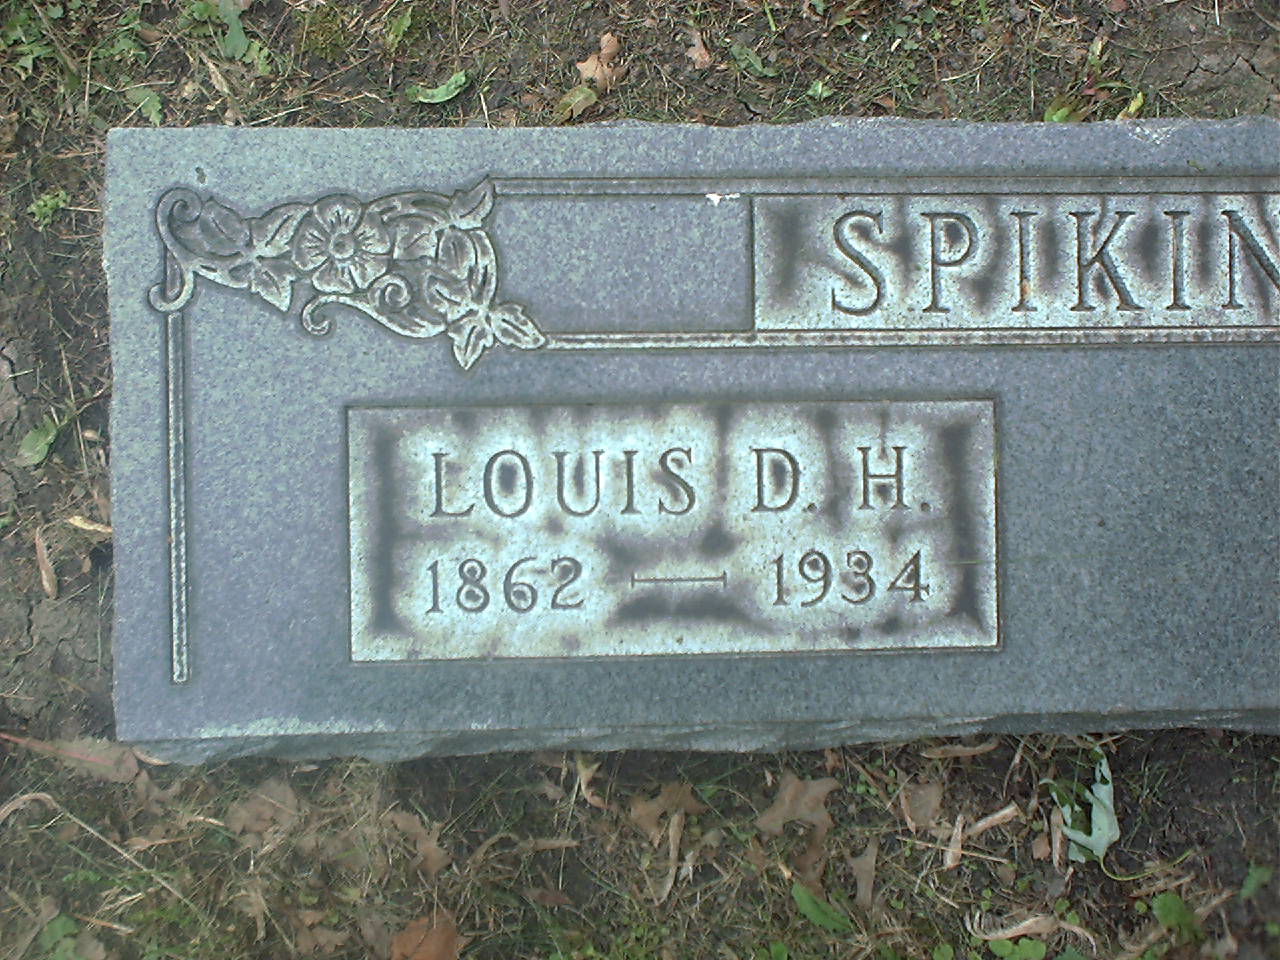 Louis D. H. Spikings detail